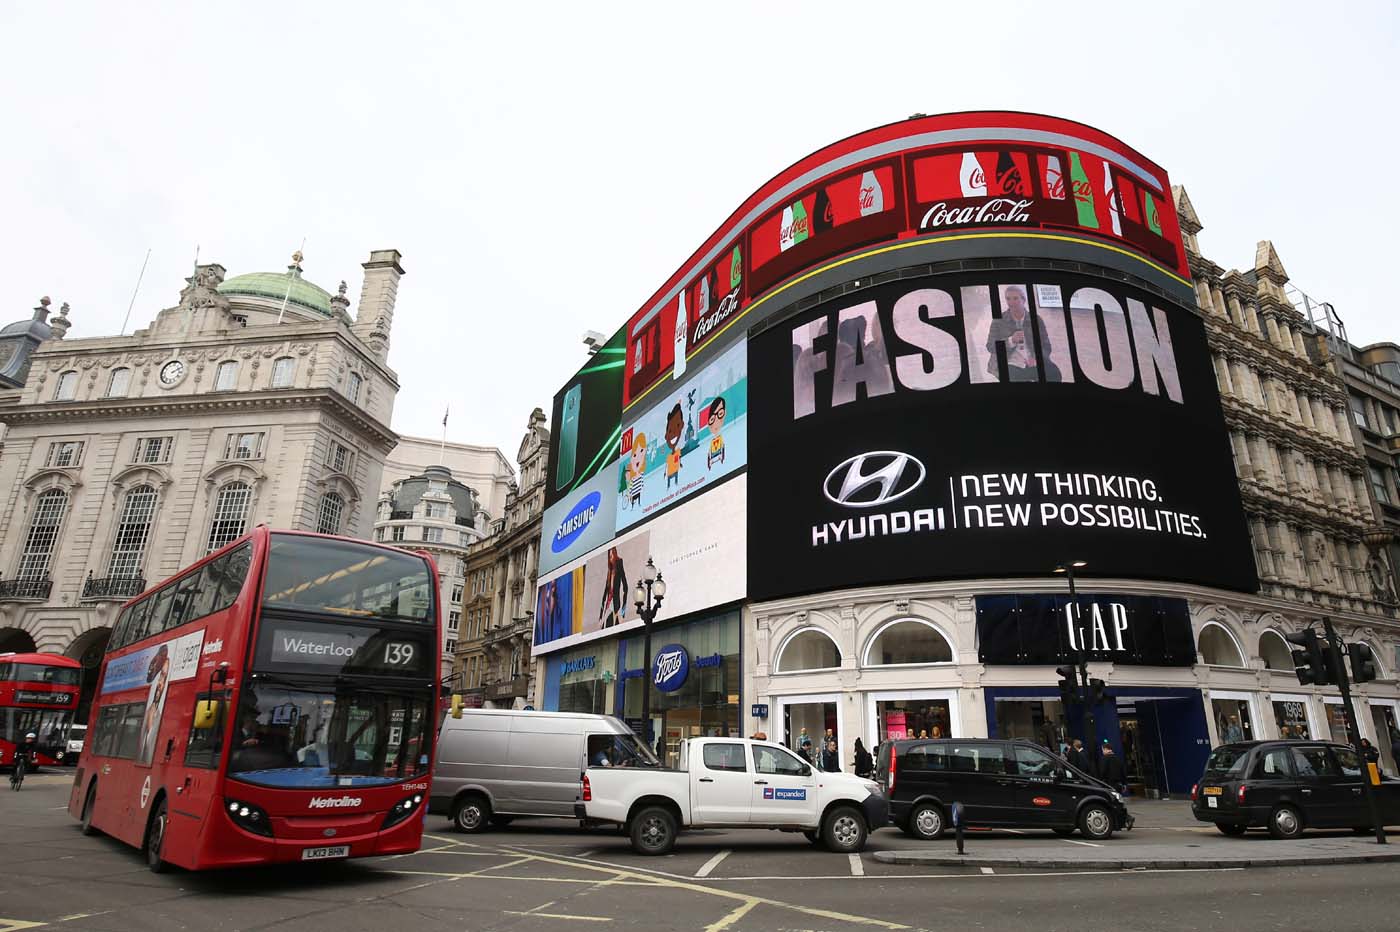 Las pantallas gigantes de Piccadilly Circus de Londres, apagadas hasta otoño